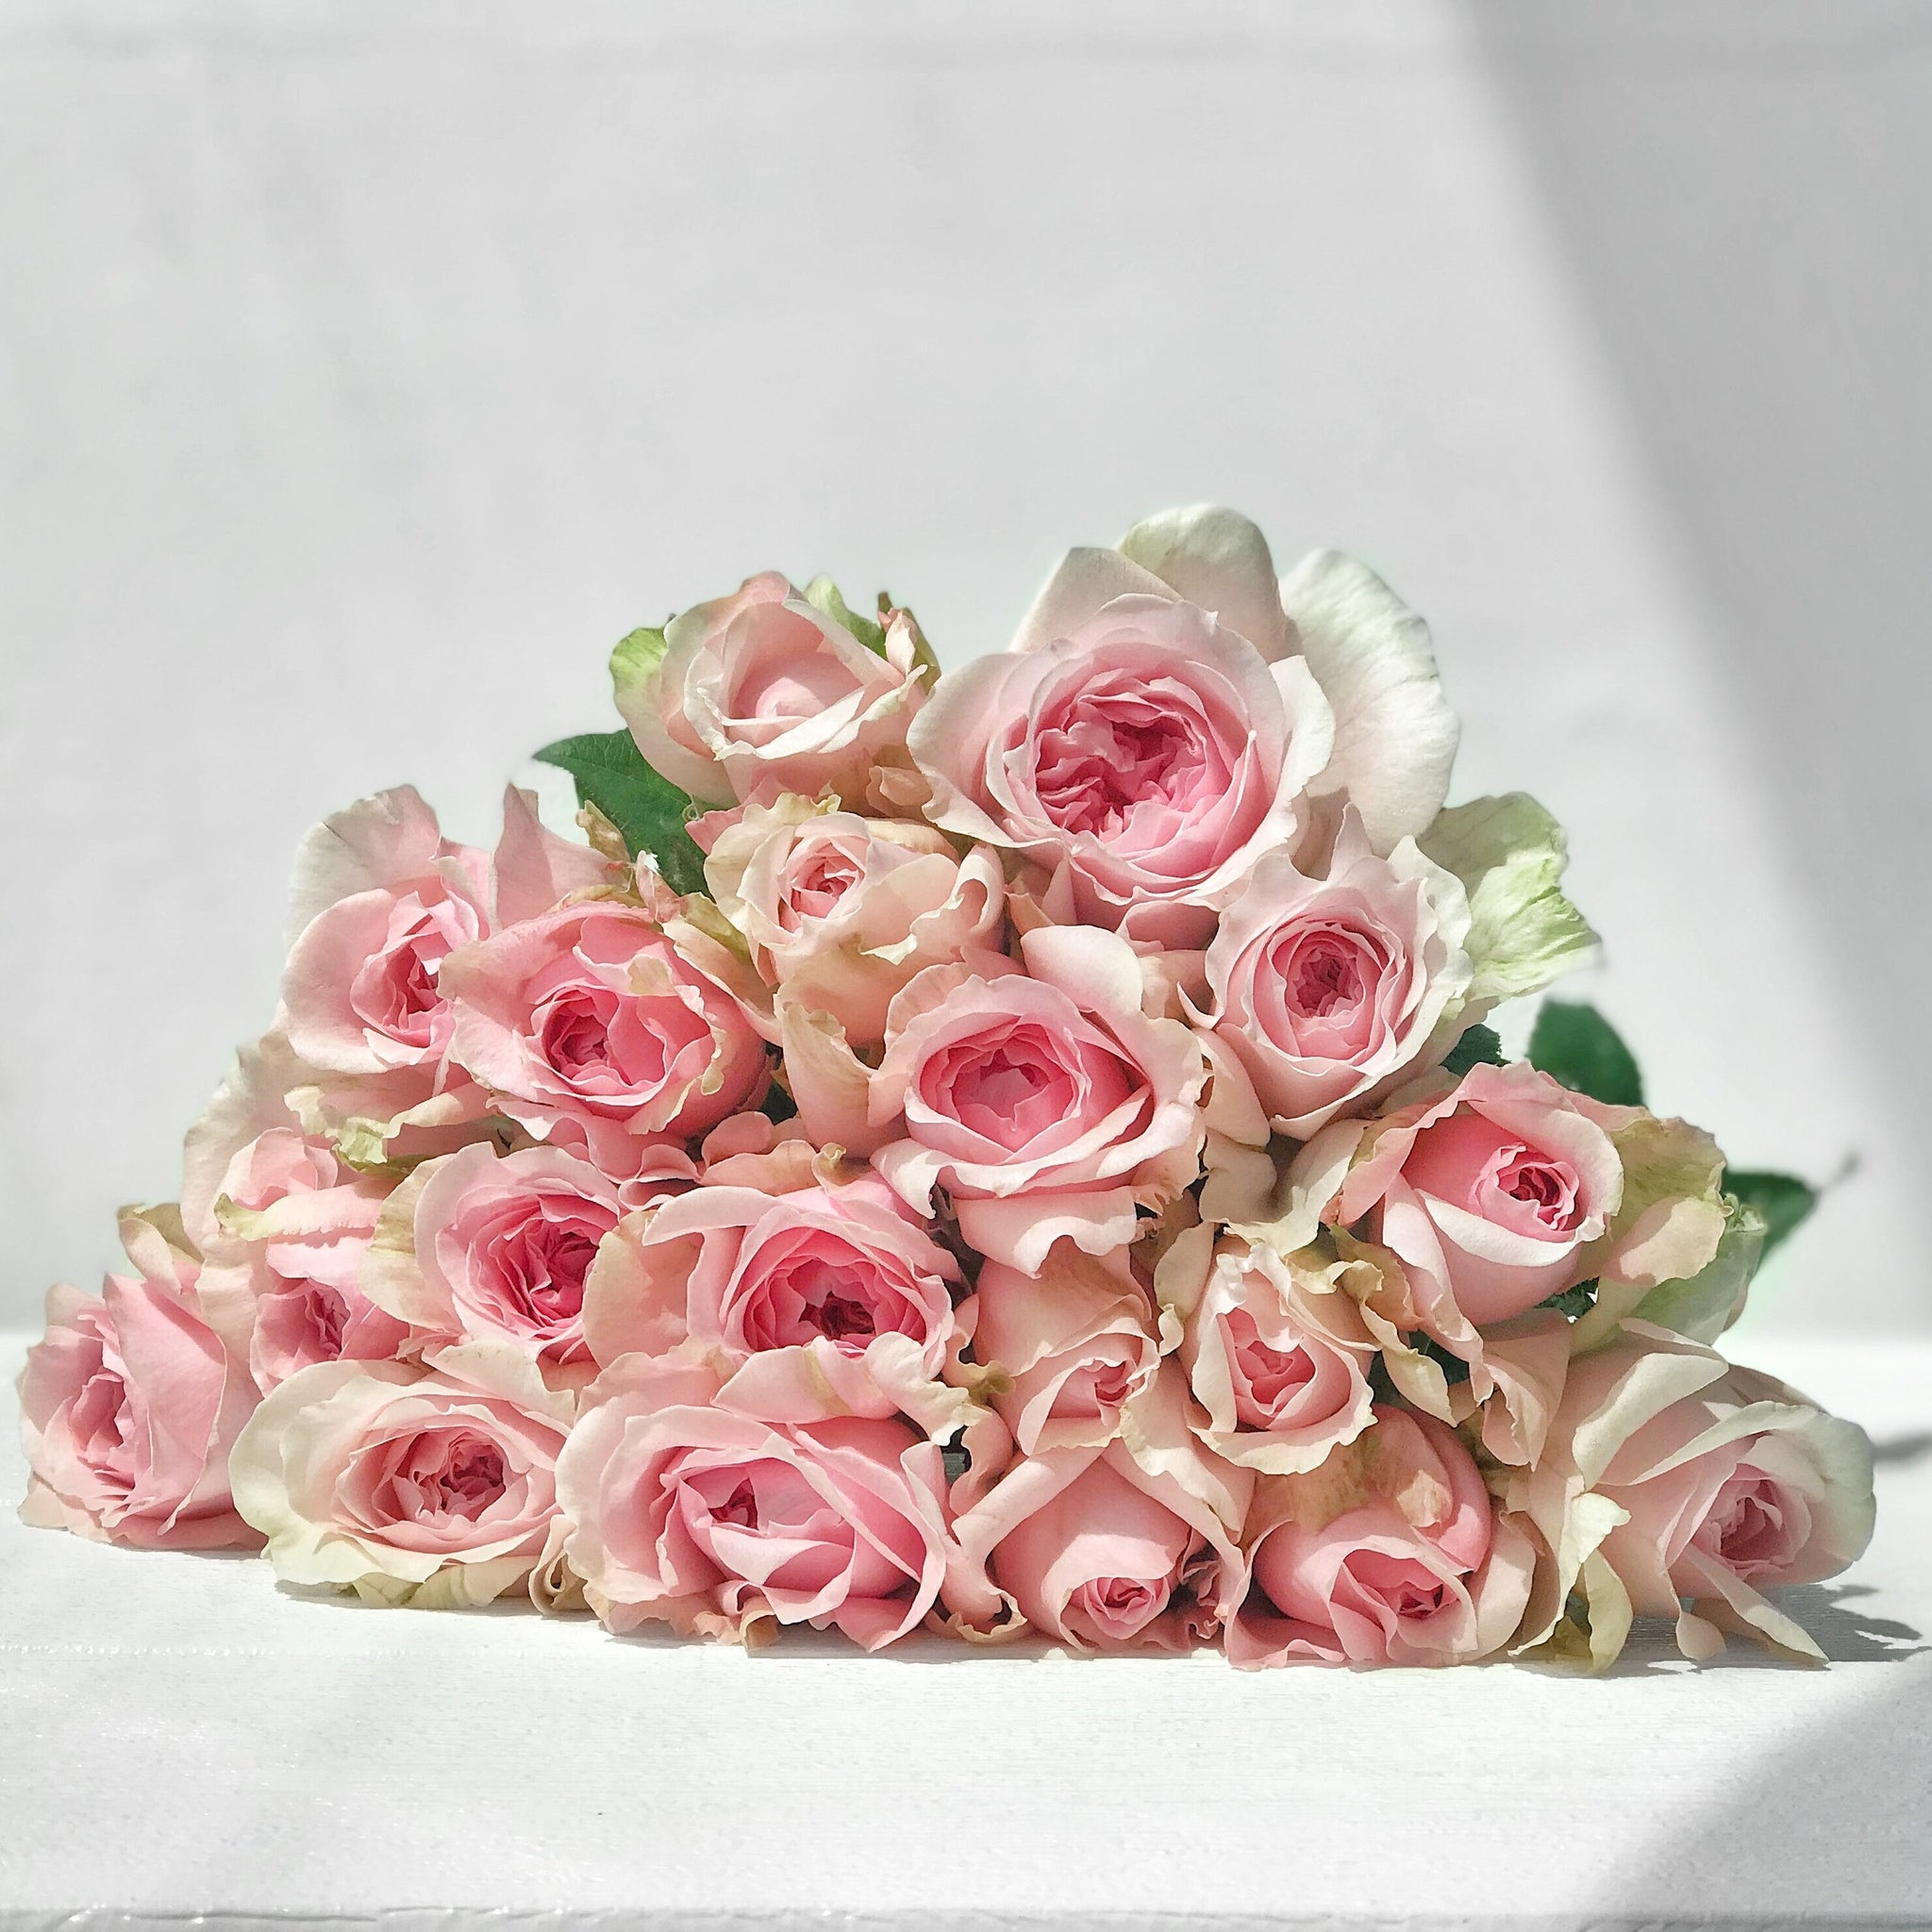 Best Bi-Color Rose Petals